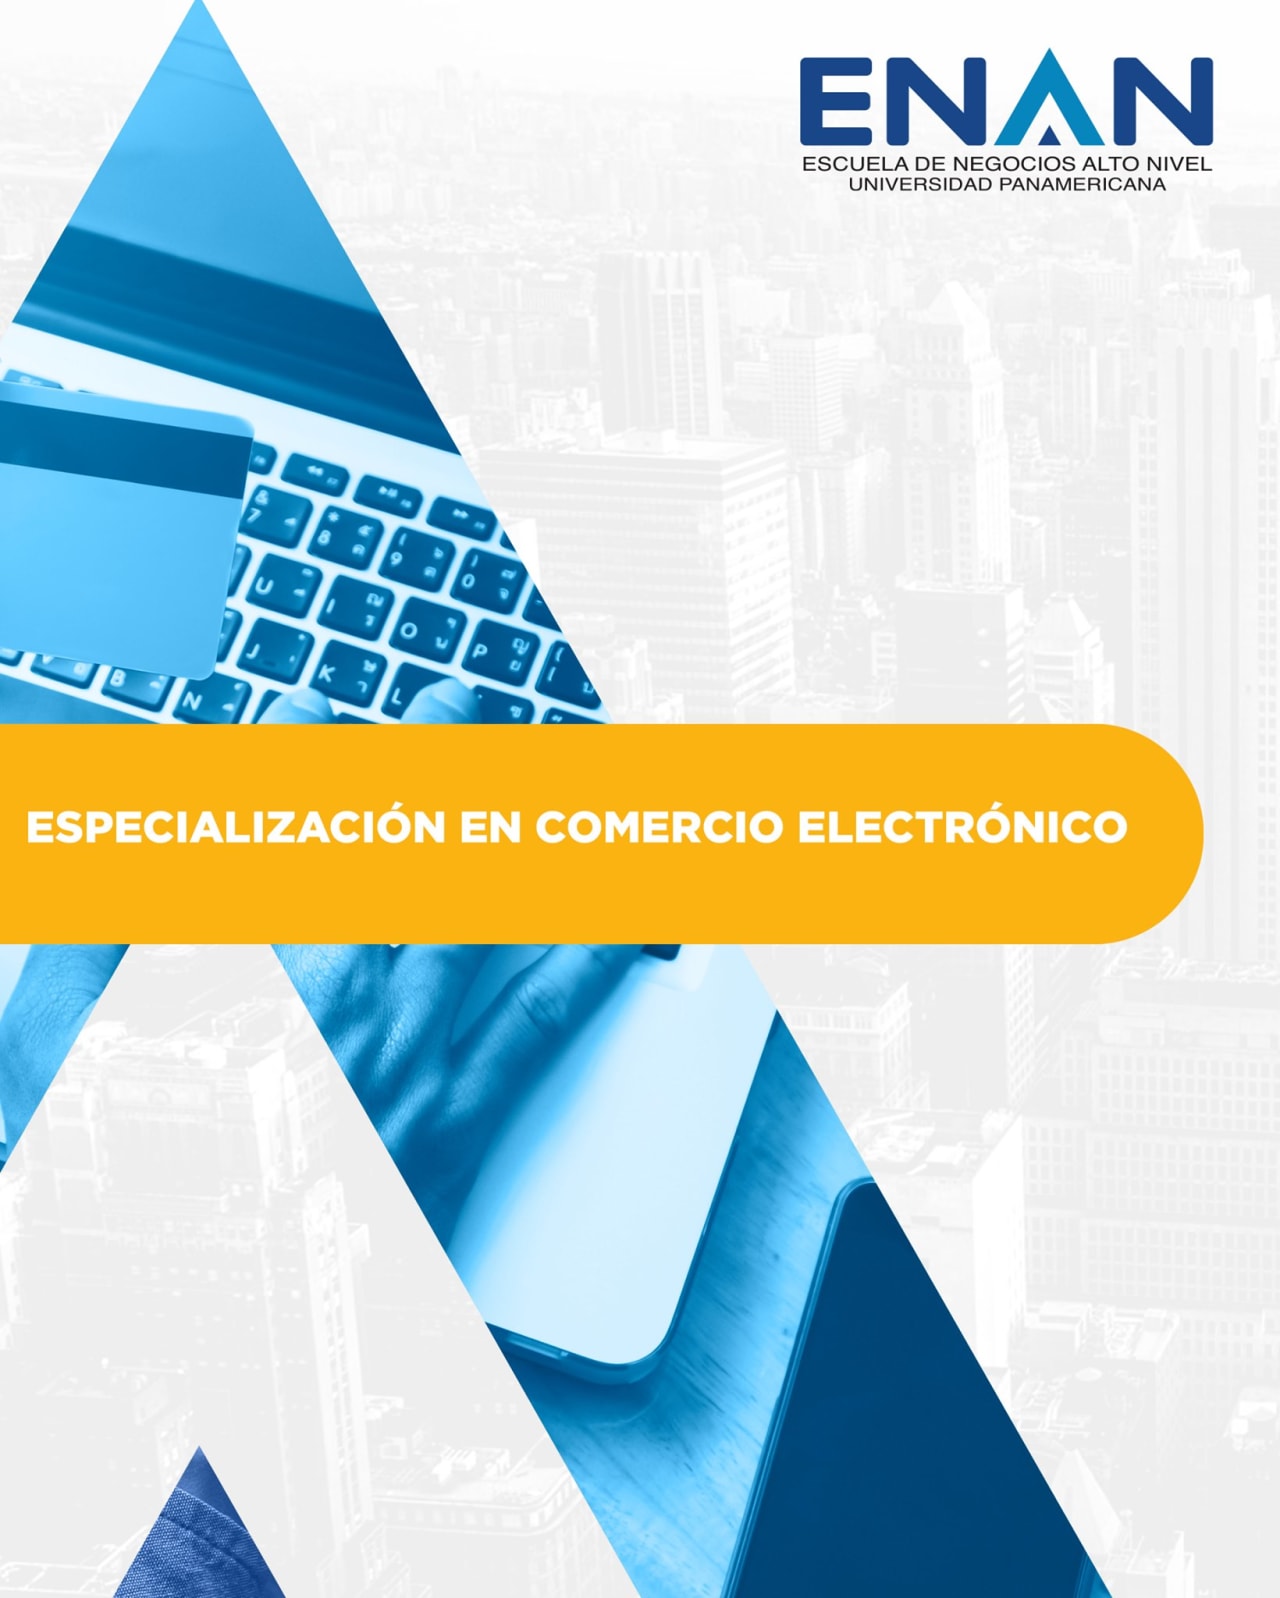 Escuela de Negocios Alto Nivel - Universidad Panamericana de Guatemala Chuyên ngành thương mại điện tử